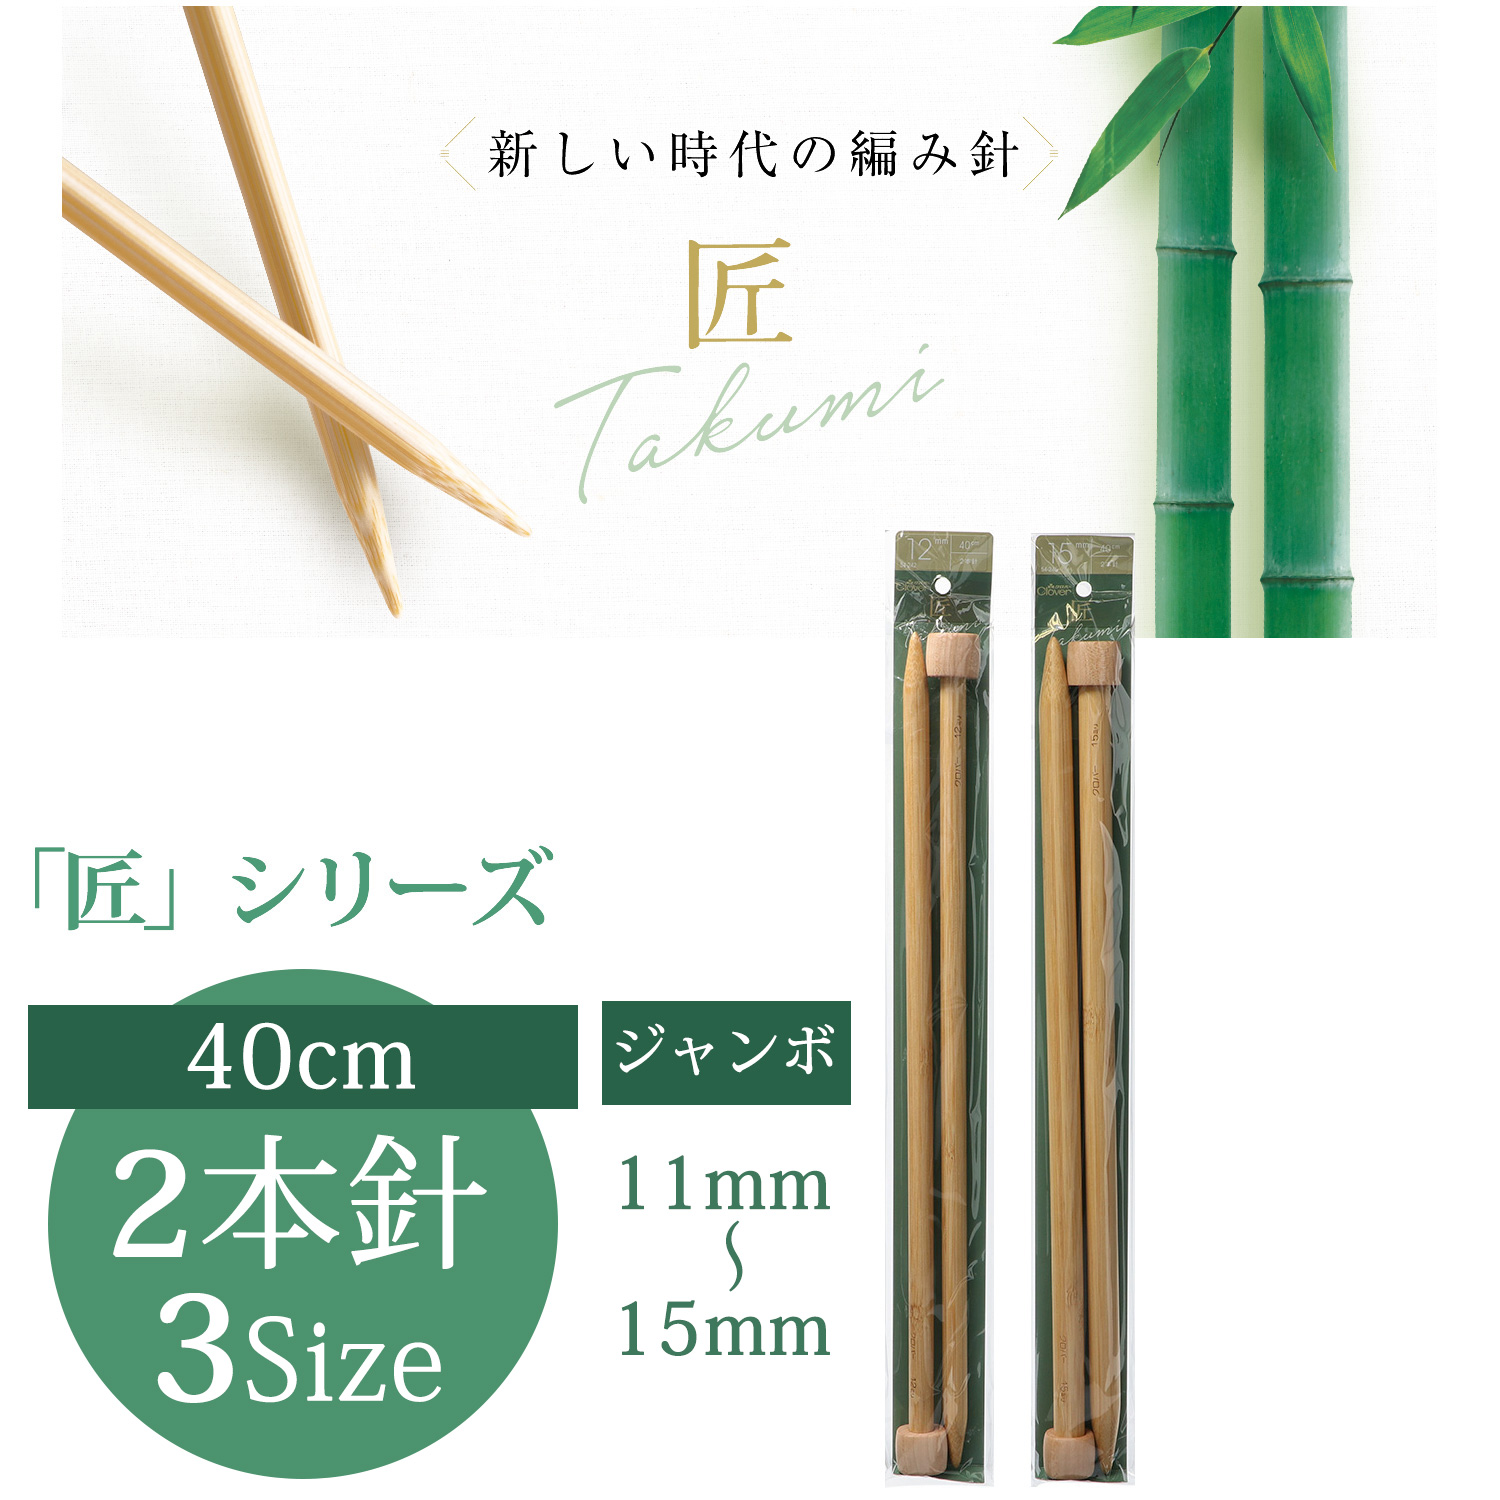 CL54-24 Clover Takumi Jumbo Knitting Needle 40cm 2pcs (pcs)